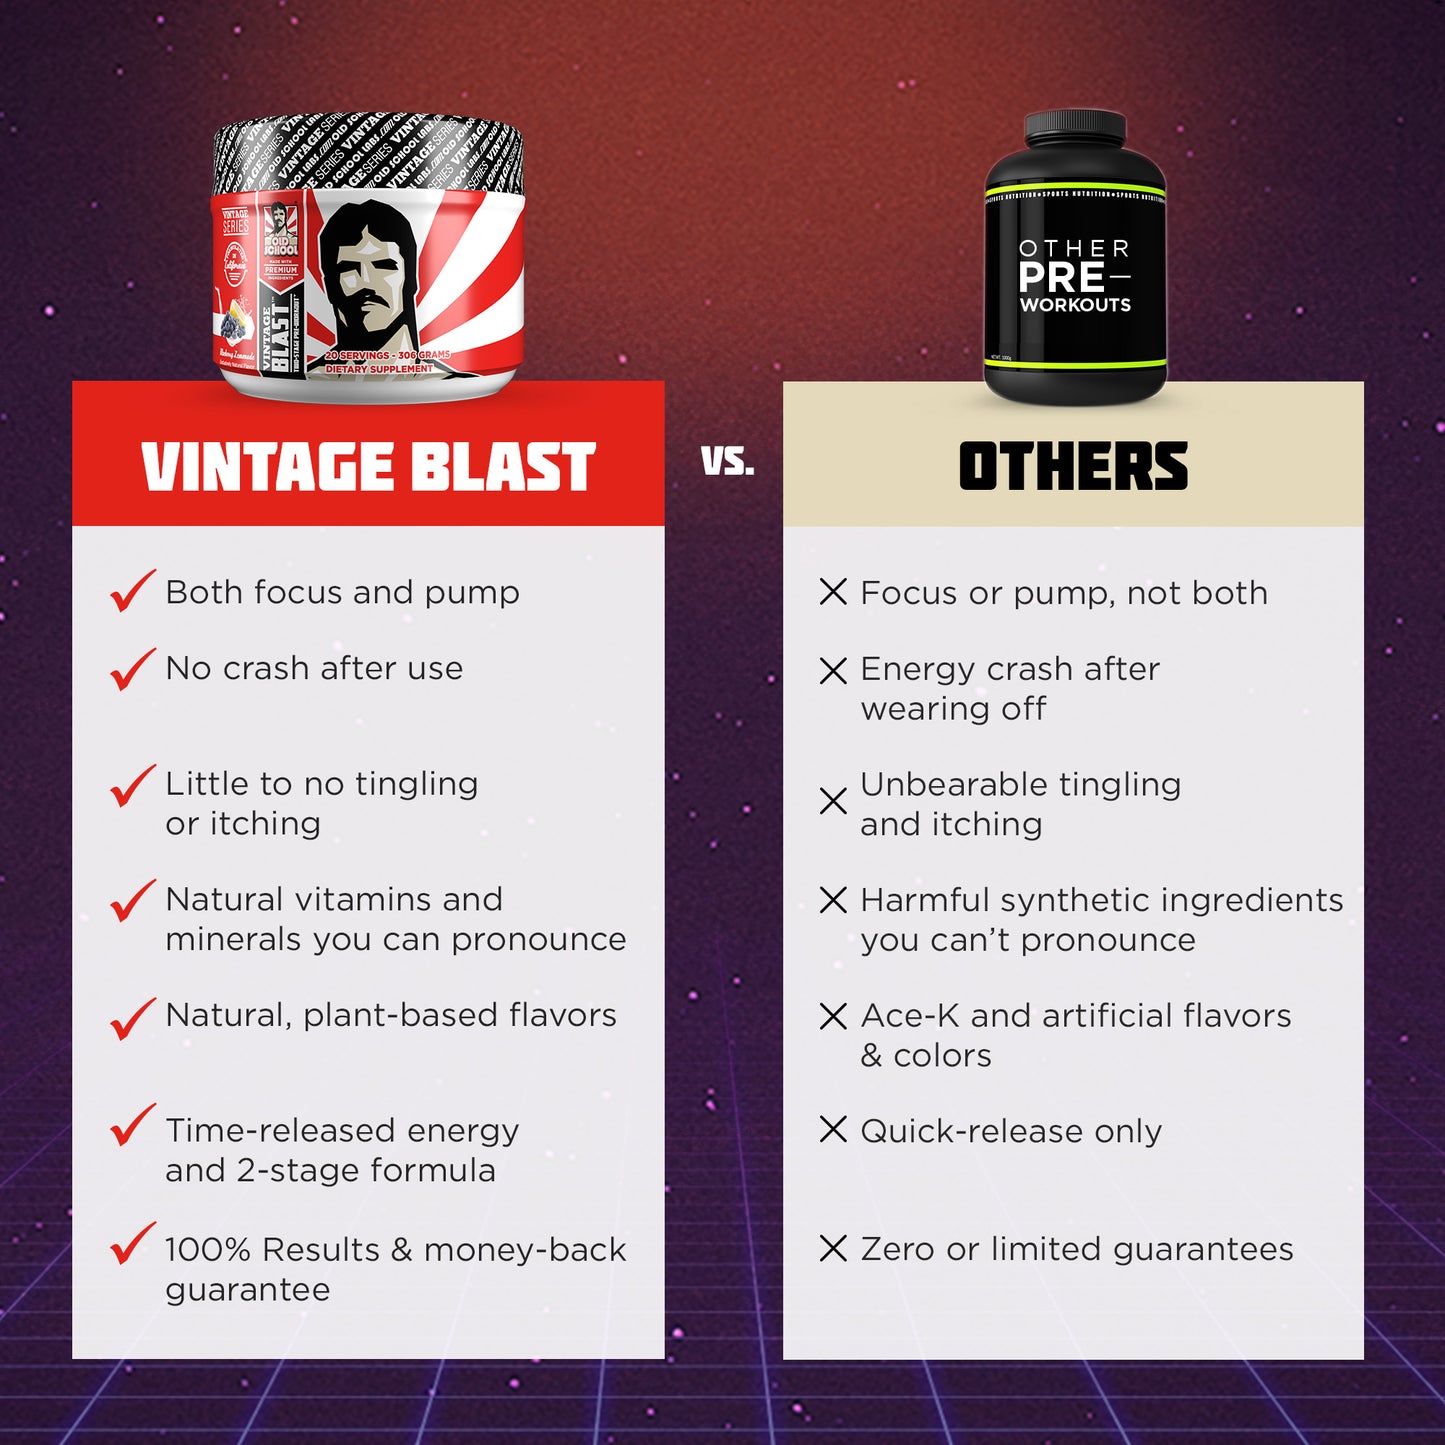 Vintage Blast vs others